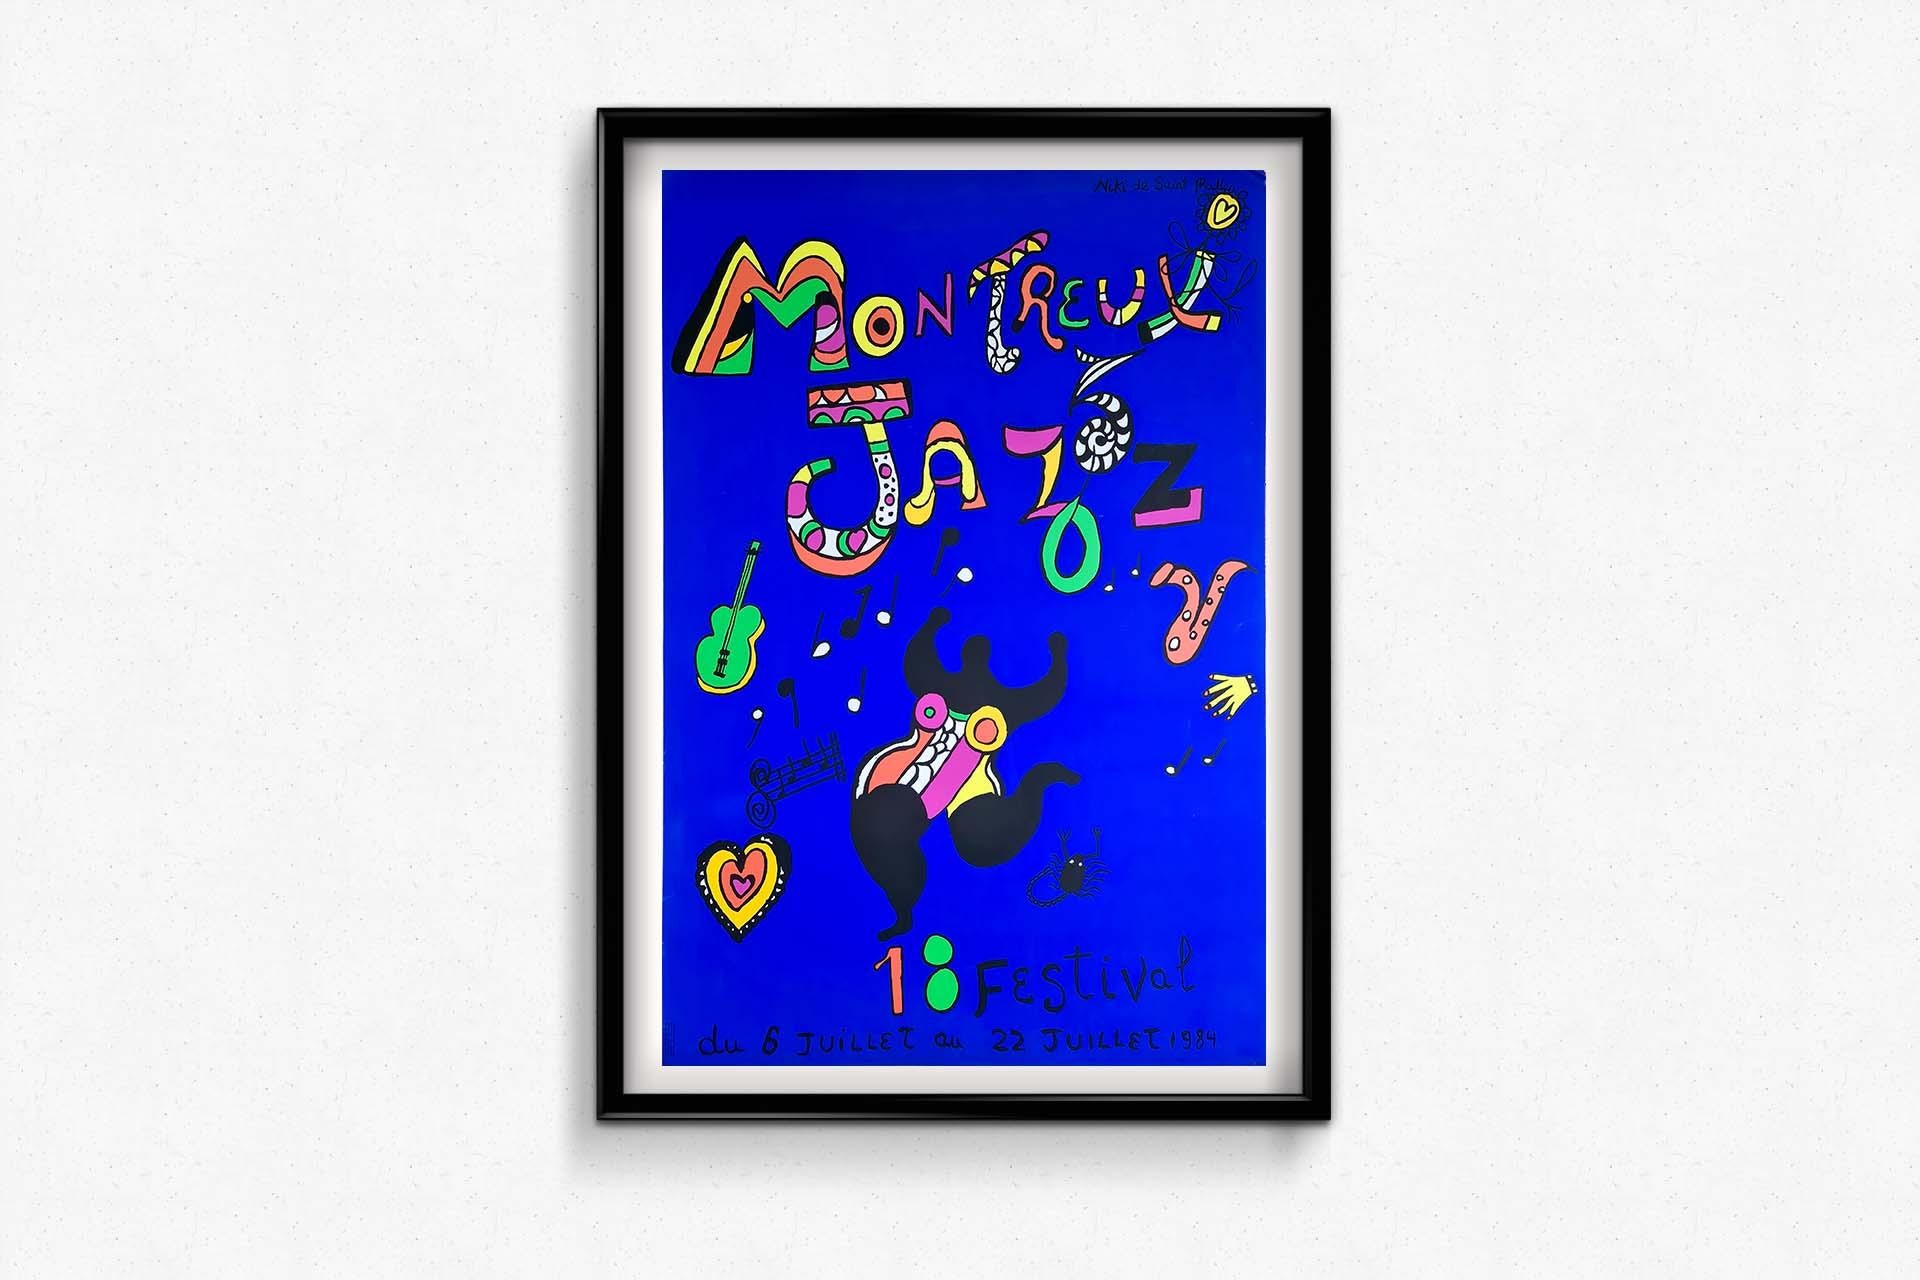 Originales Siebdruckplakat von Niki de Saint Phalle – 18. Montreux Jazz Festival 1